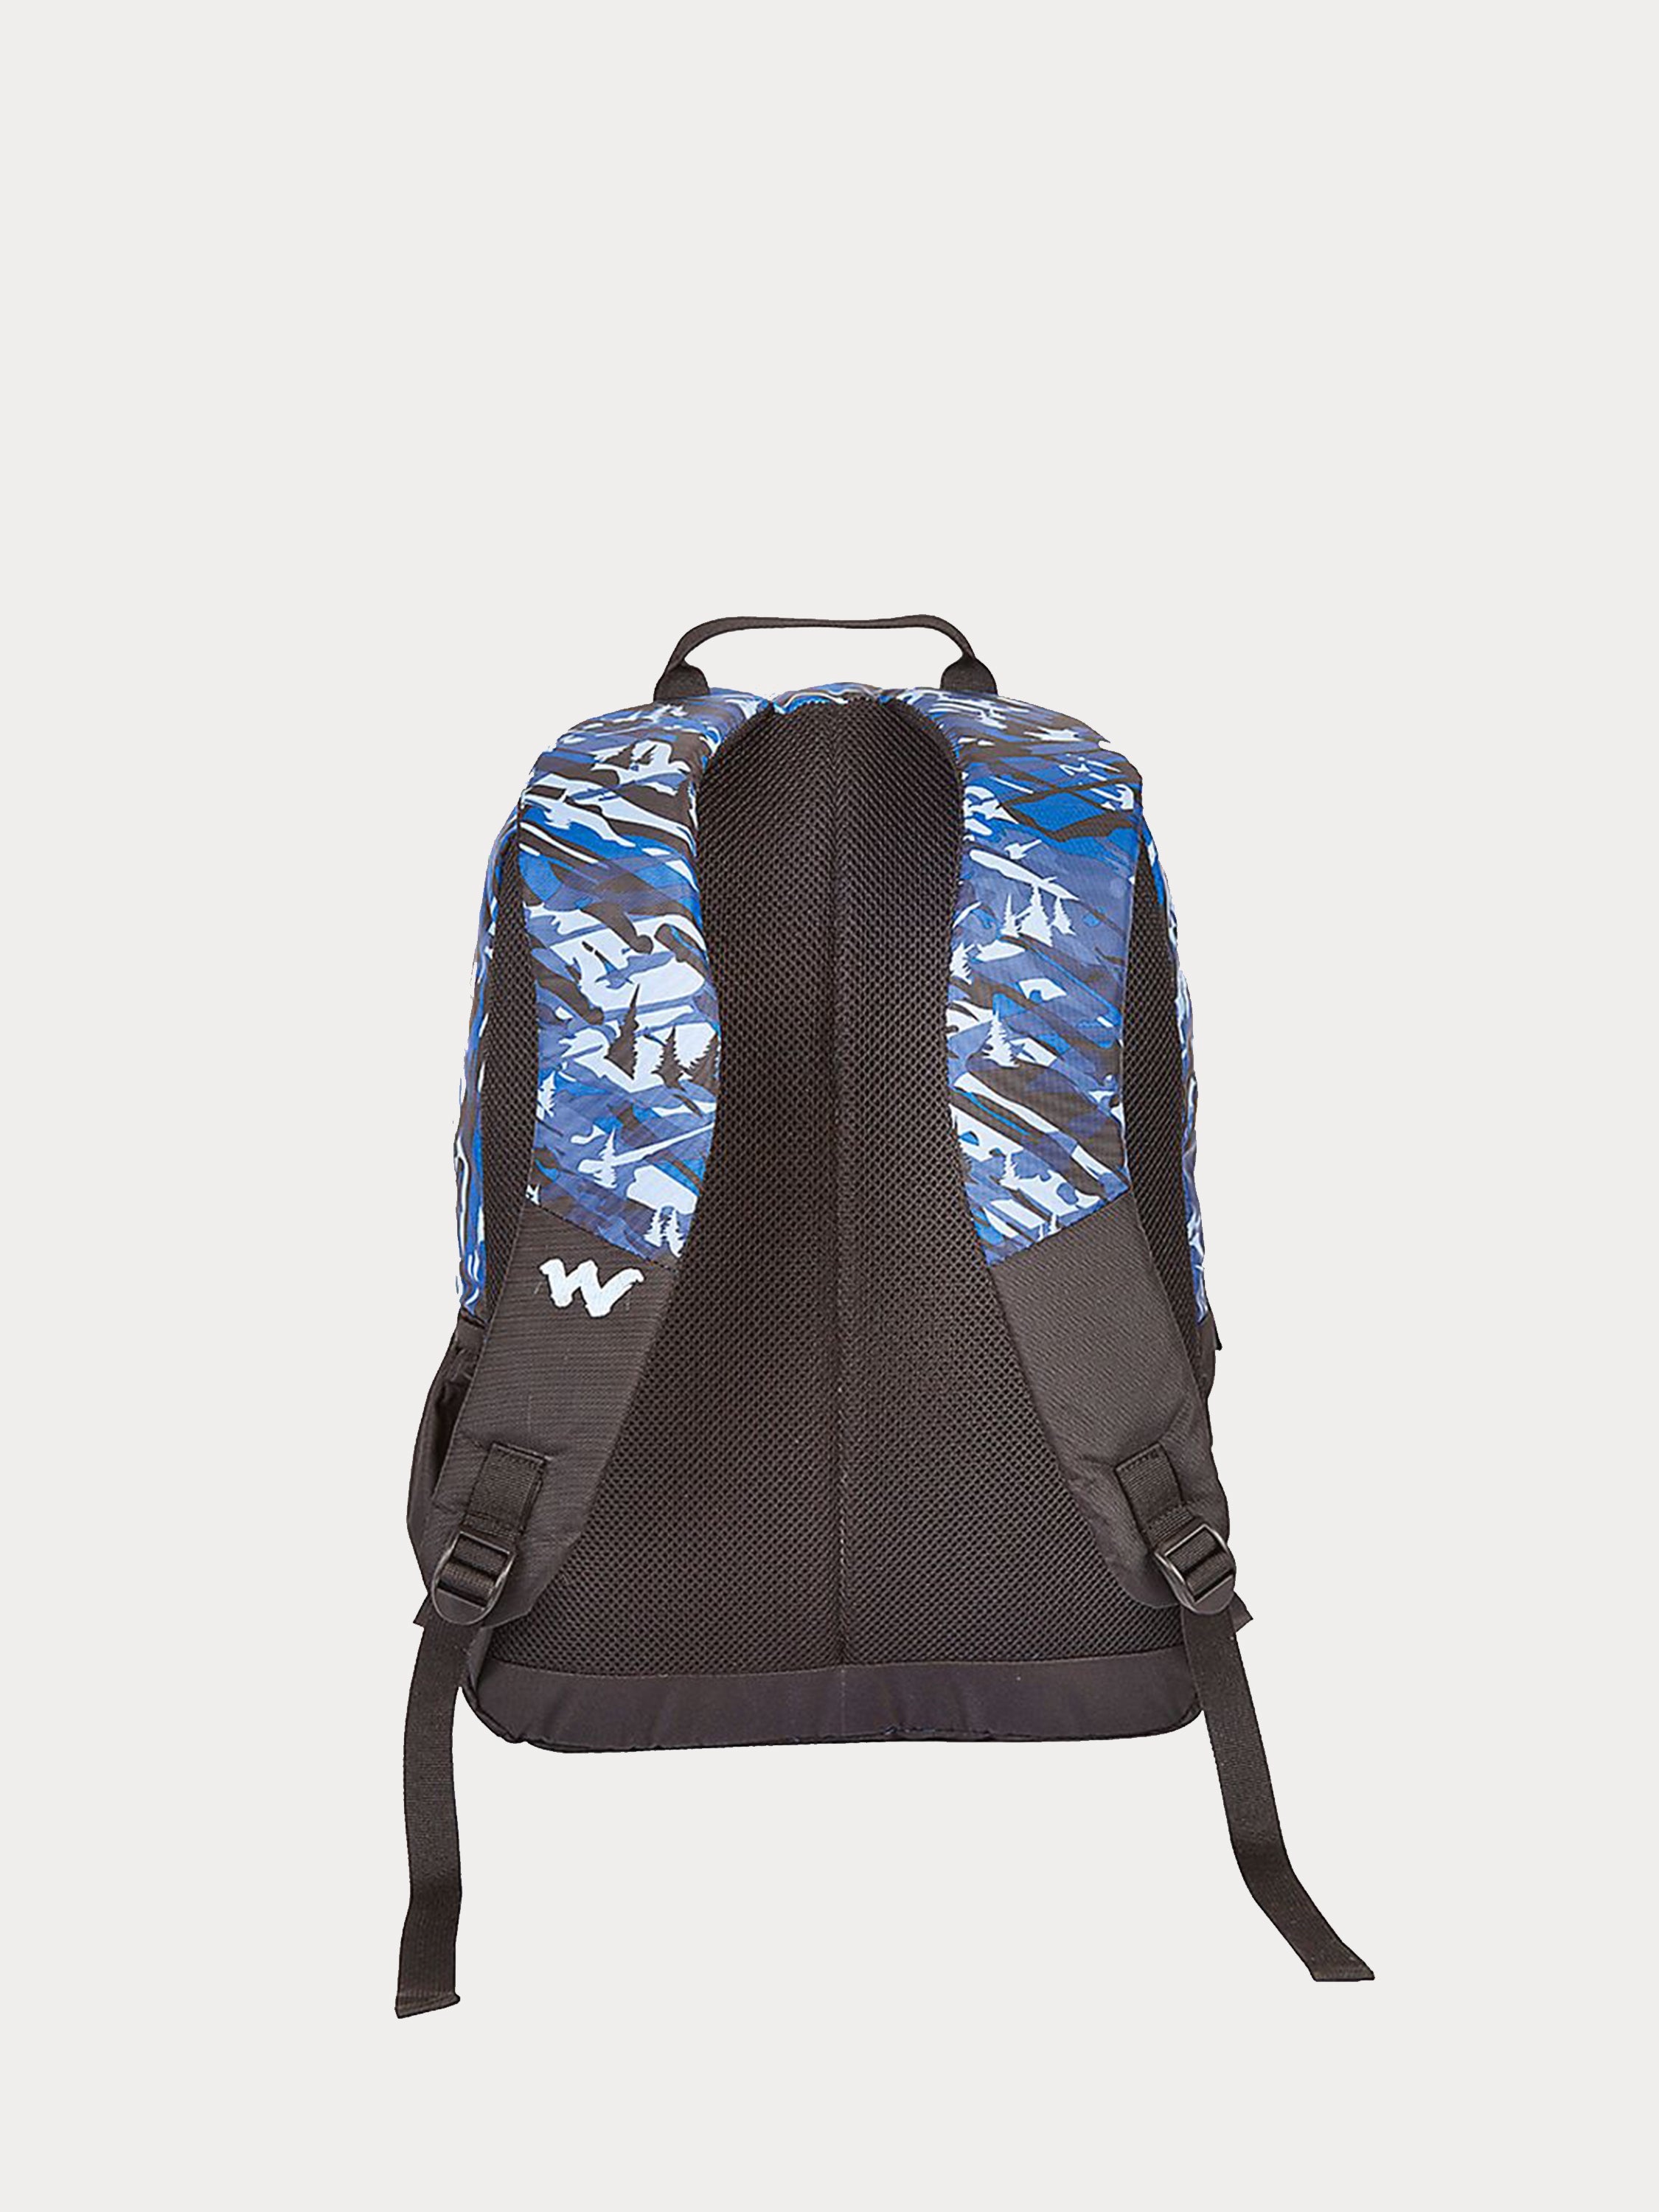 Wildcraft Camo 2 Backpack